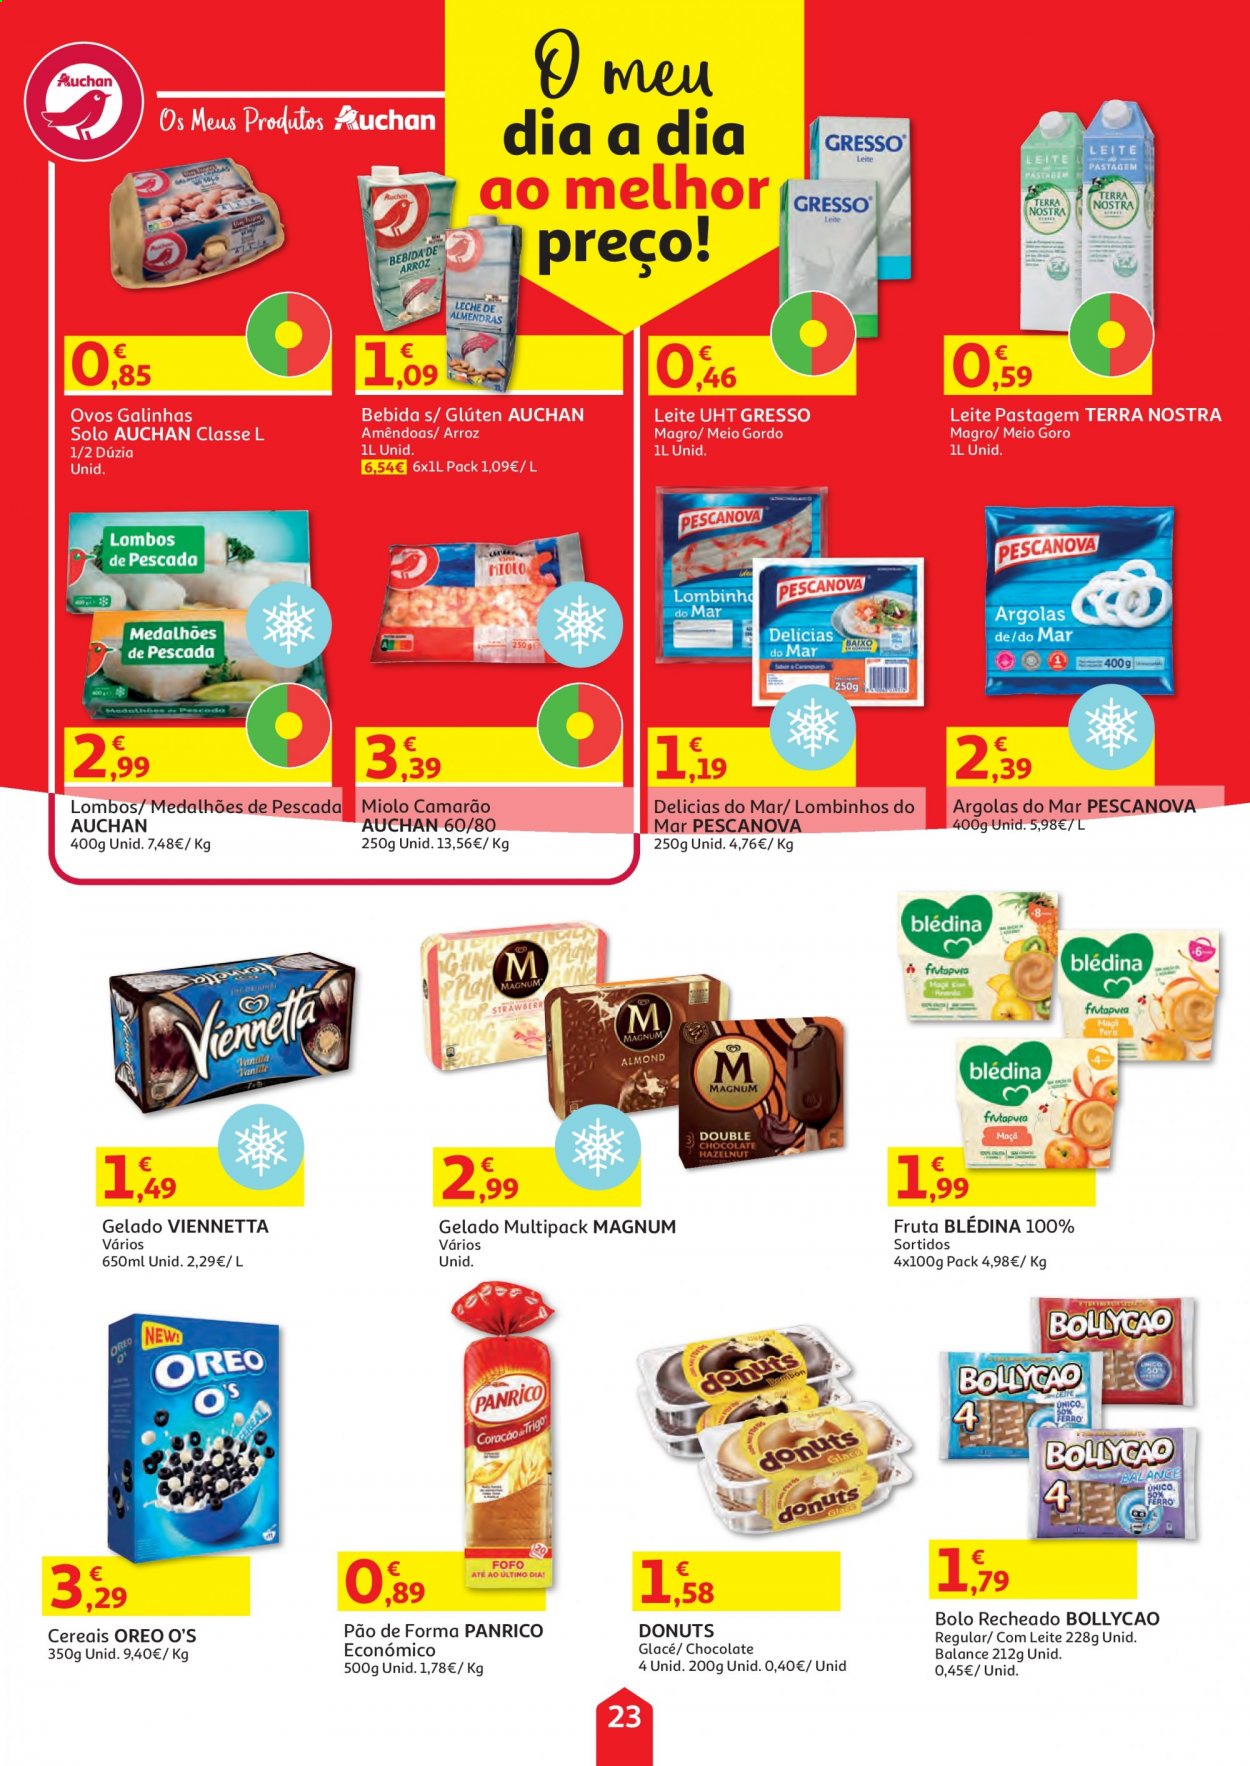 thumbnail - Folheto Auchan - 5.4.2021 - 19.4.2021 - Produtos em promoção - pão, pão de forma, bolo, camarão, Oreo, ovos, Viennetta, Magnum, chocolate, cereais, arroz. Página 23.